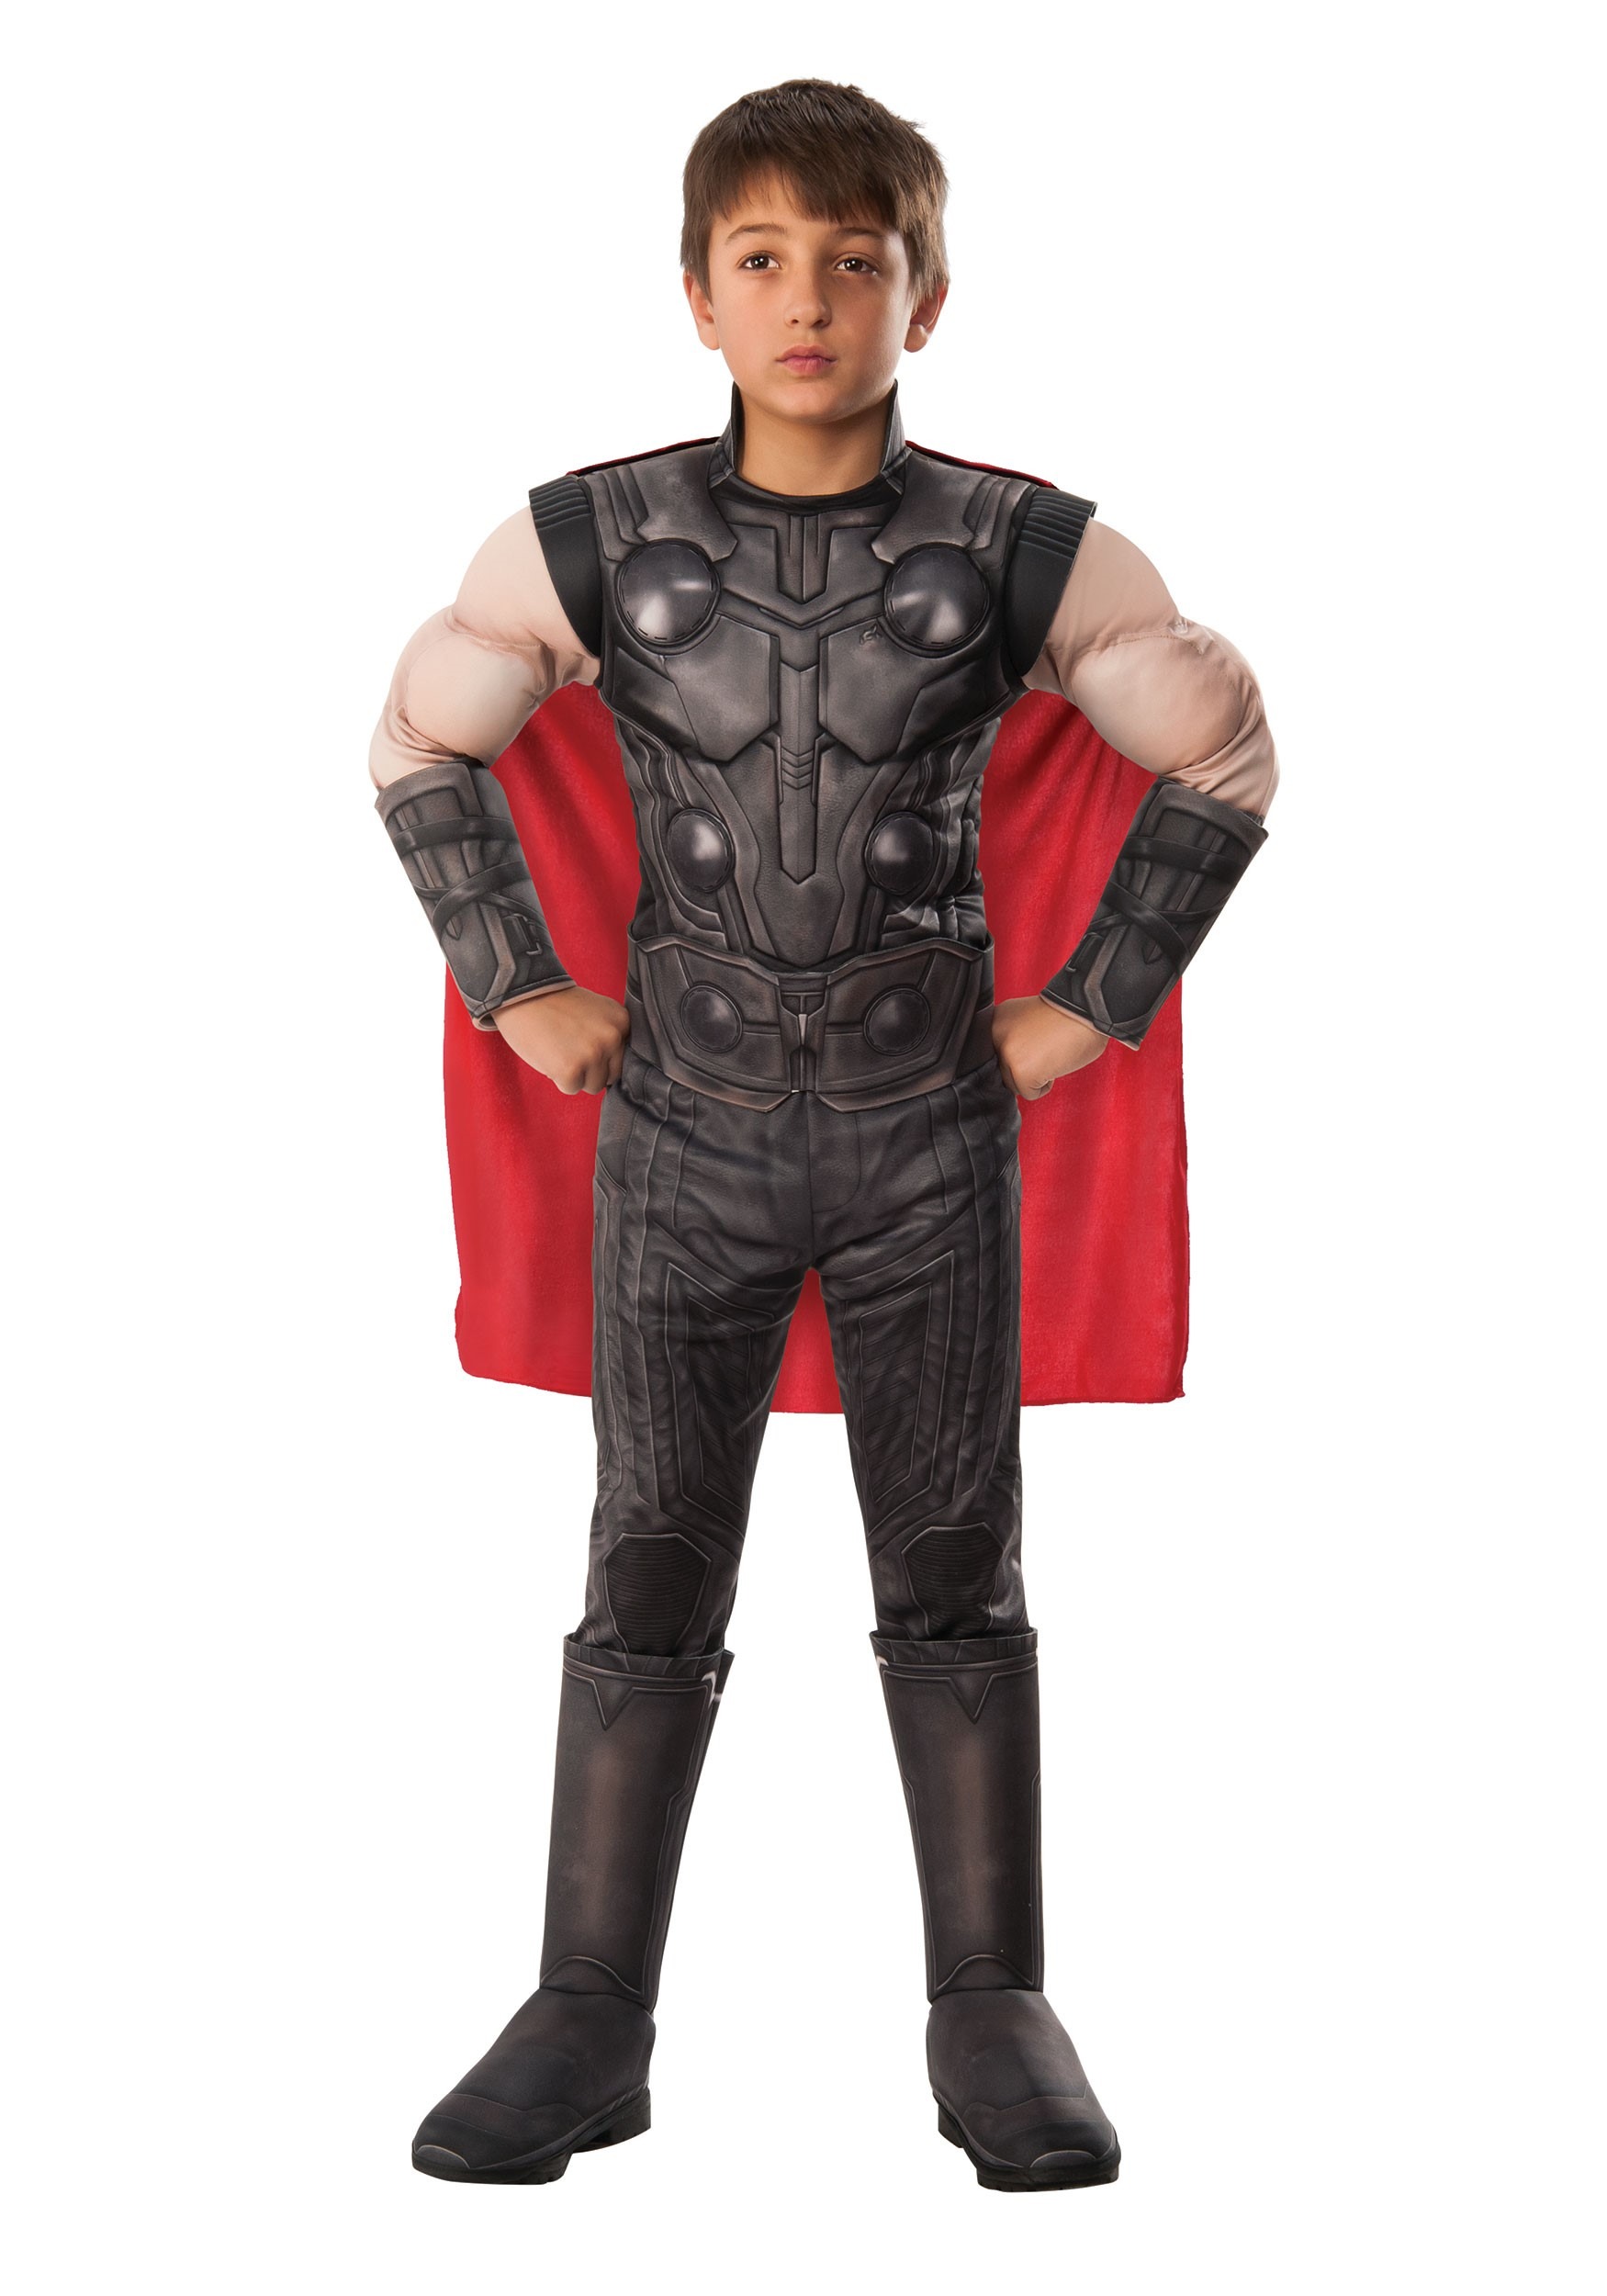 Star Lord Avengers Endgame Marvel DC Comics Fancy Dress Costume 